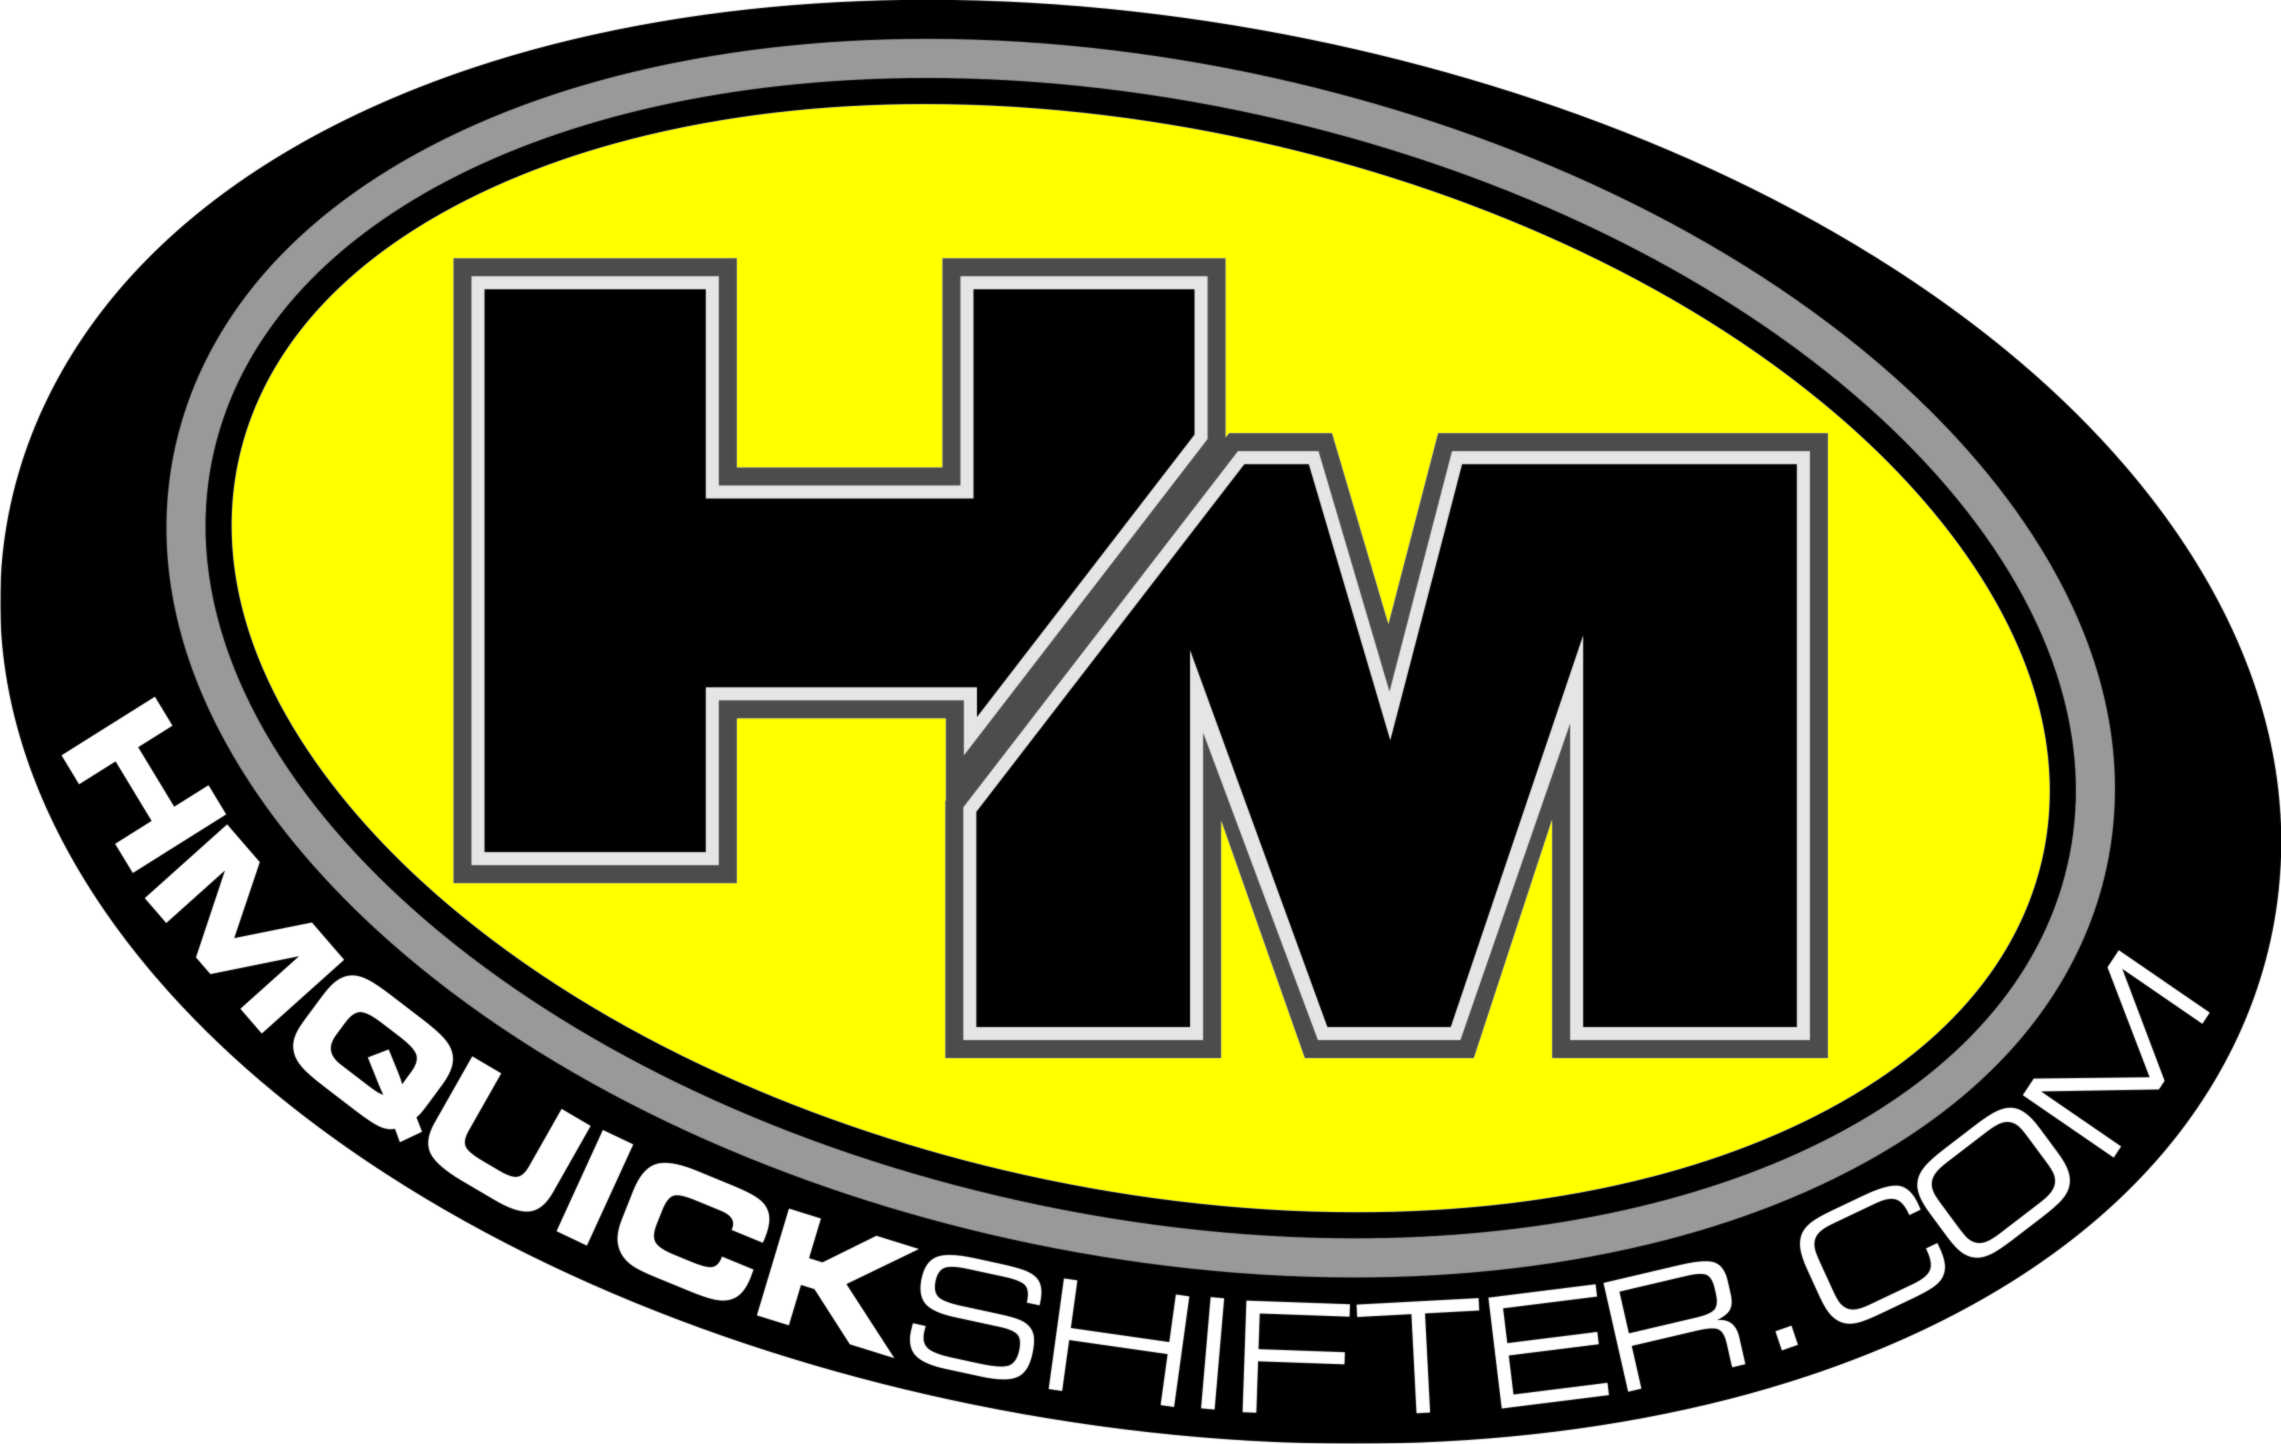 hm-quickshifter-logo2.jpg